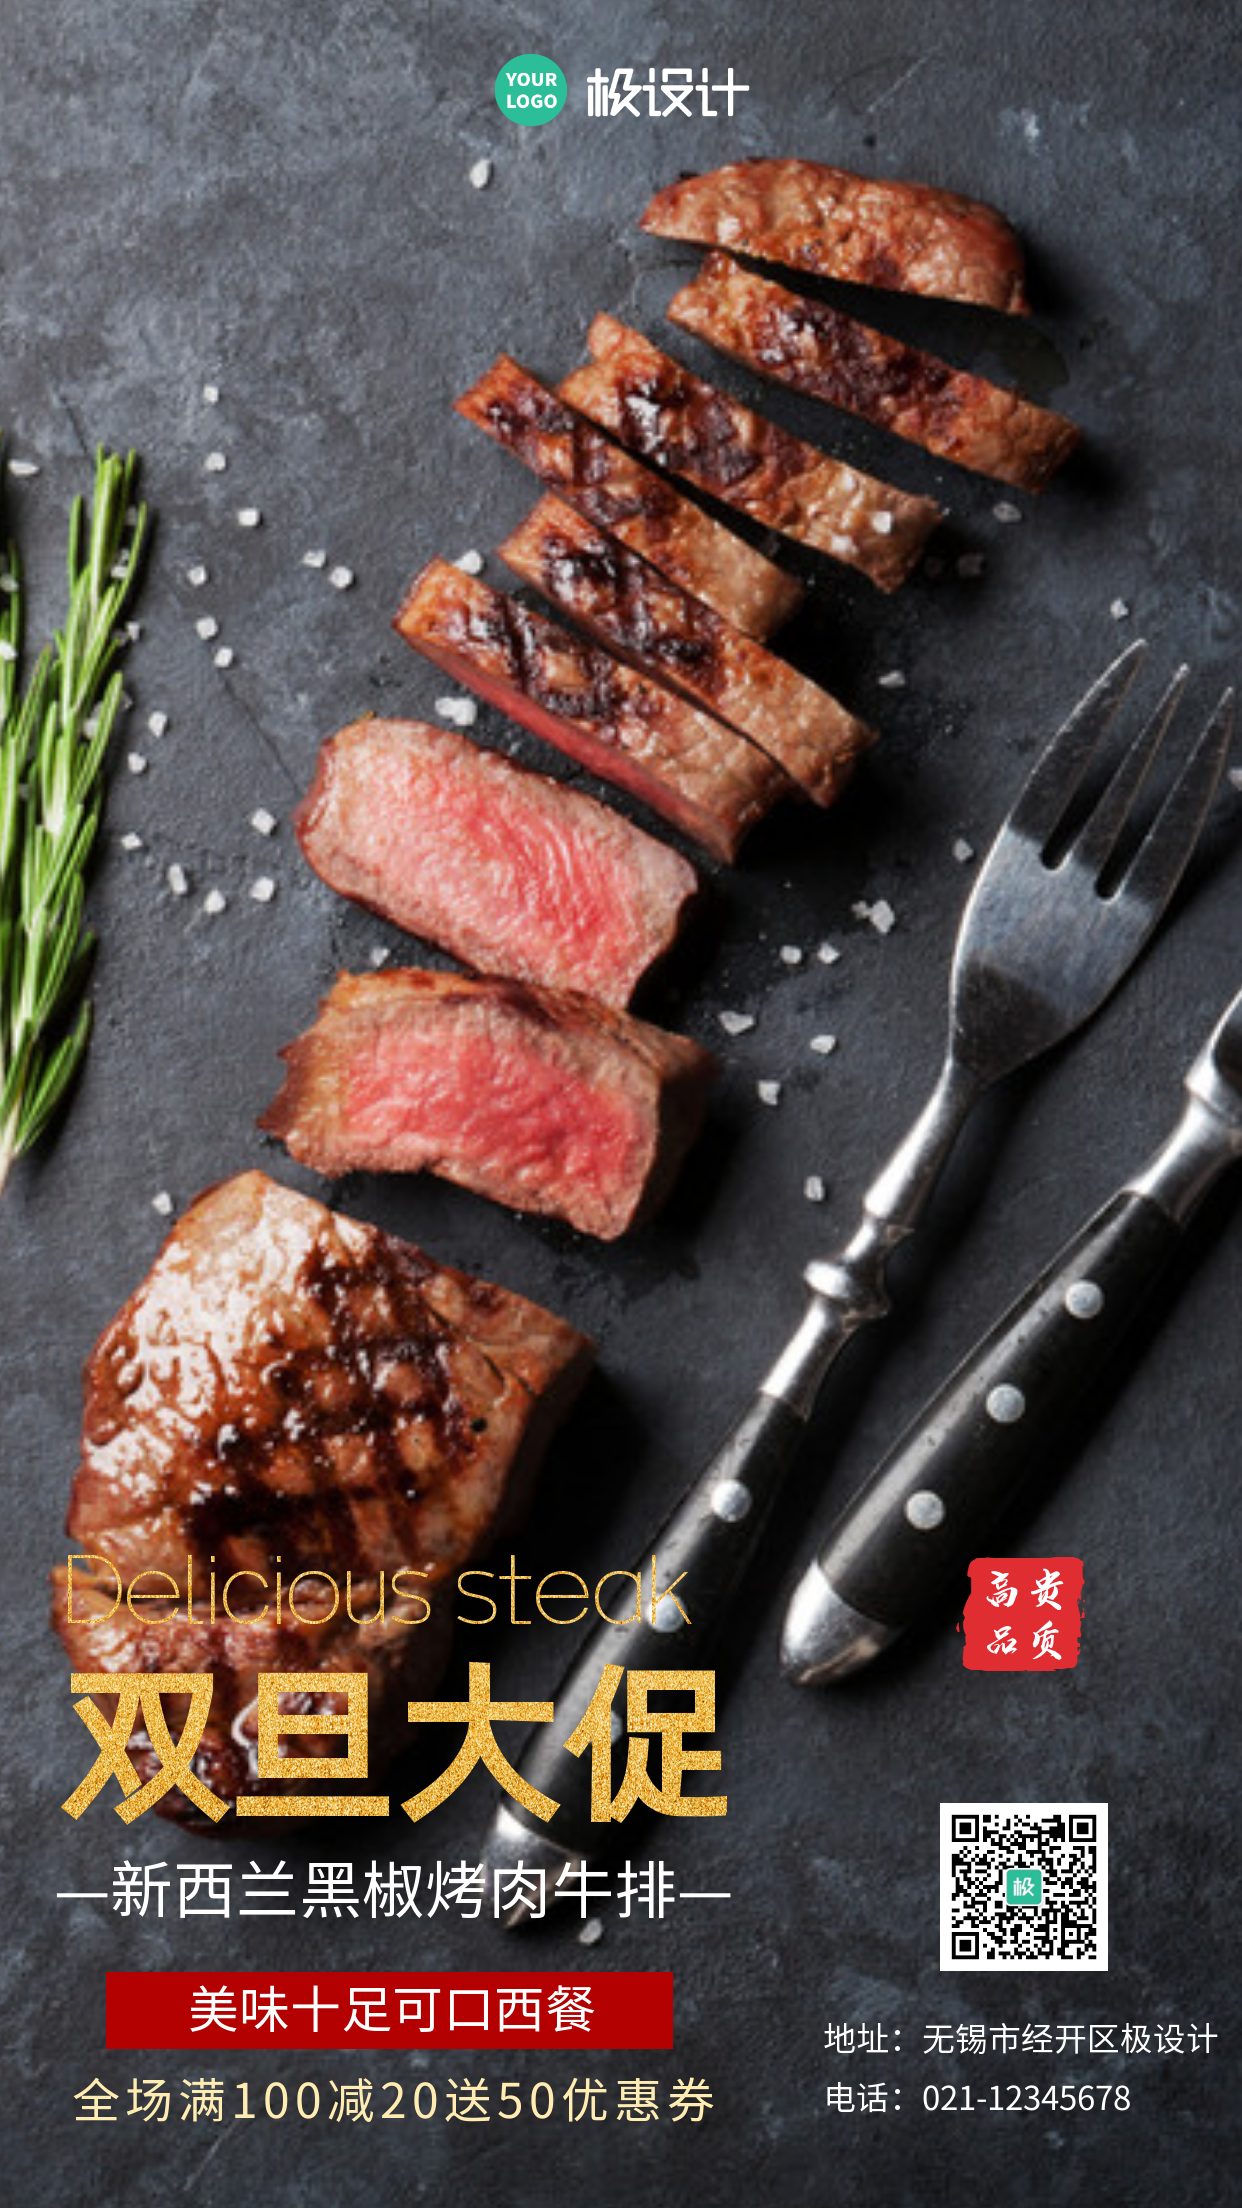 双旦促销活动牛排肉摄影图手机海报